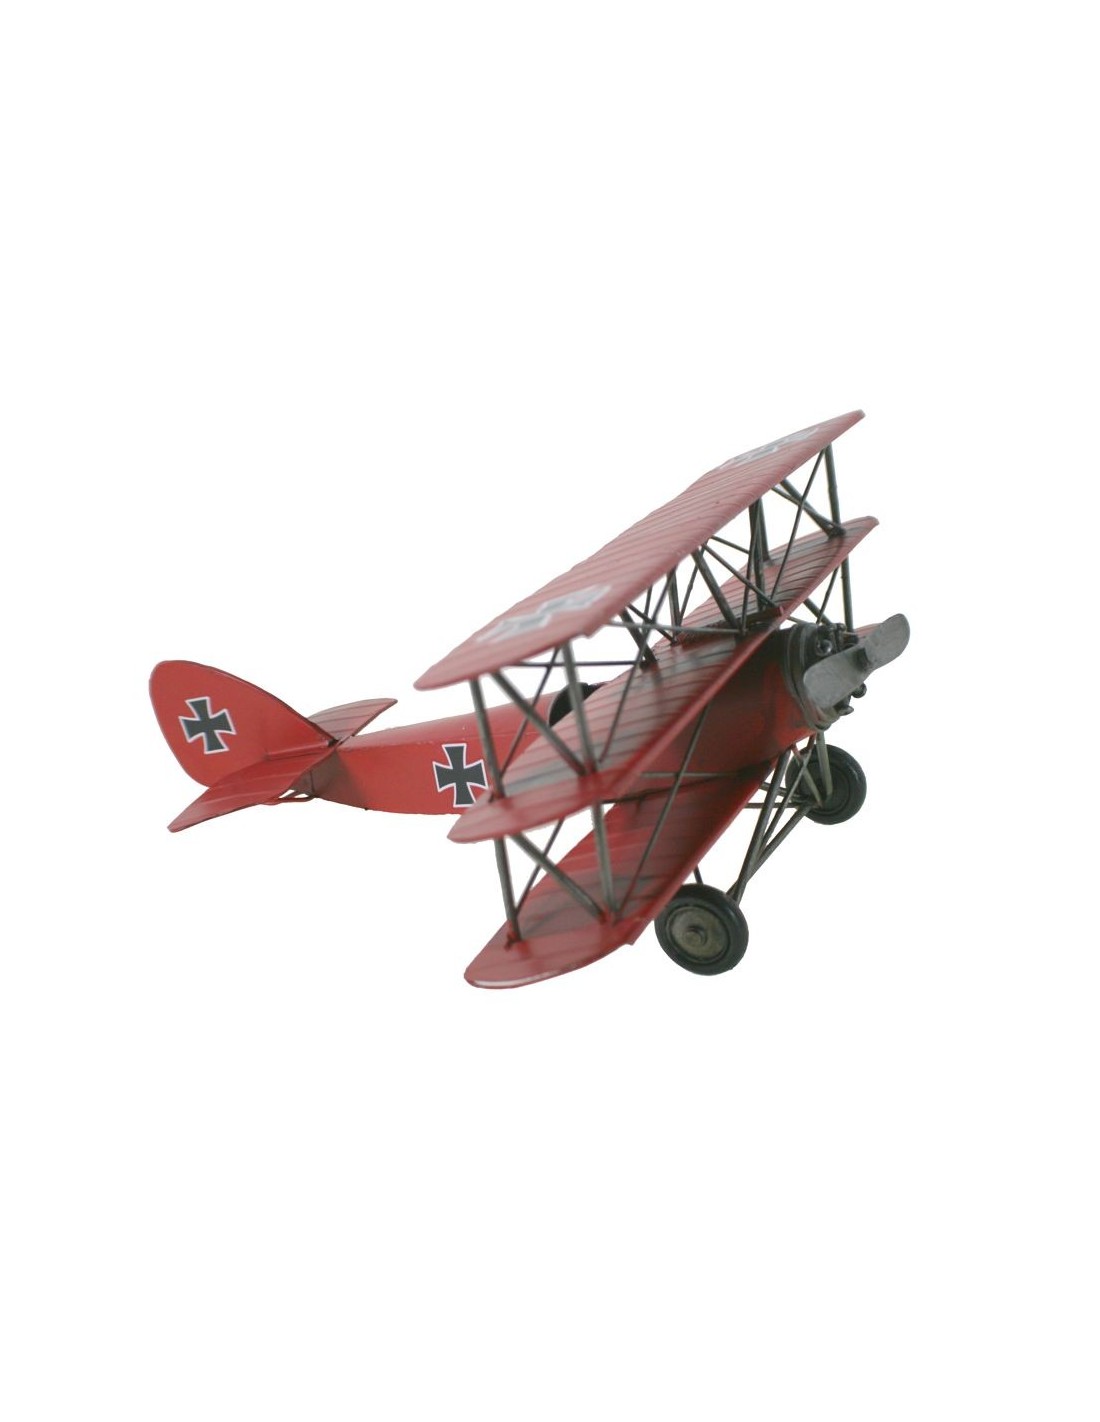 Avión triplano replica metal color rojo para coleccionistas.